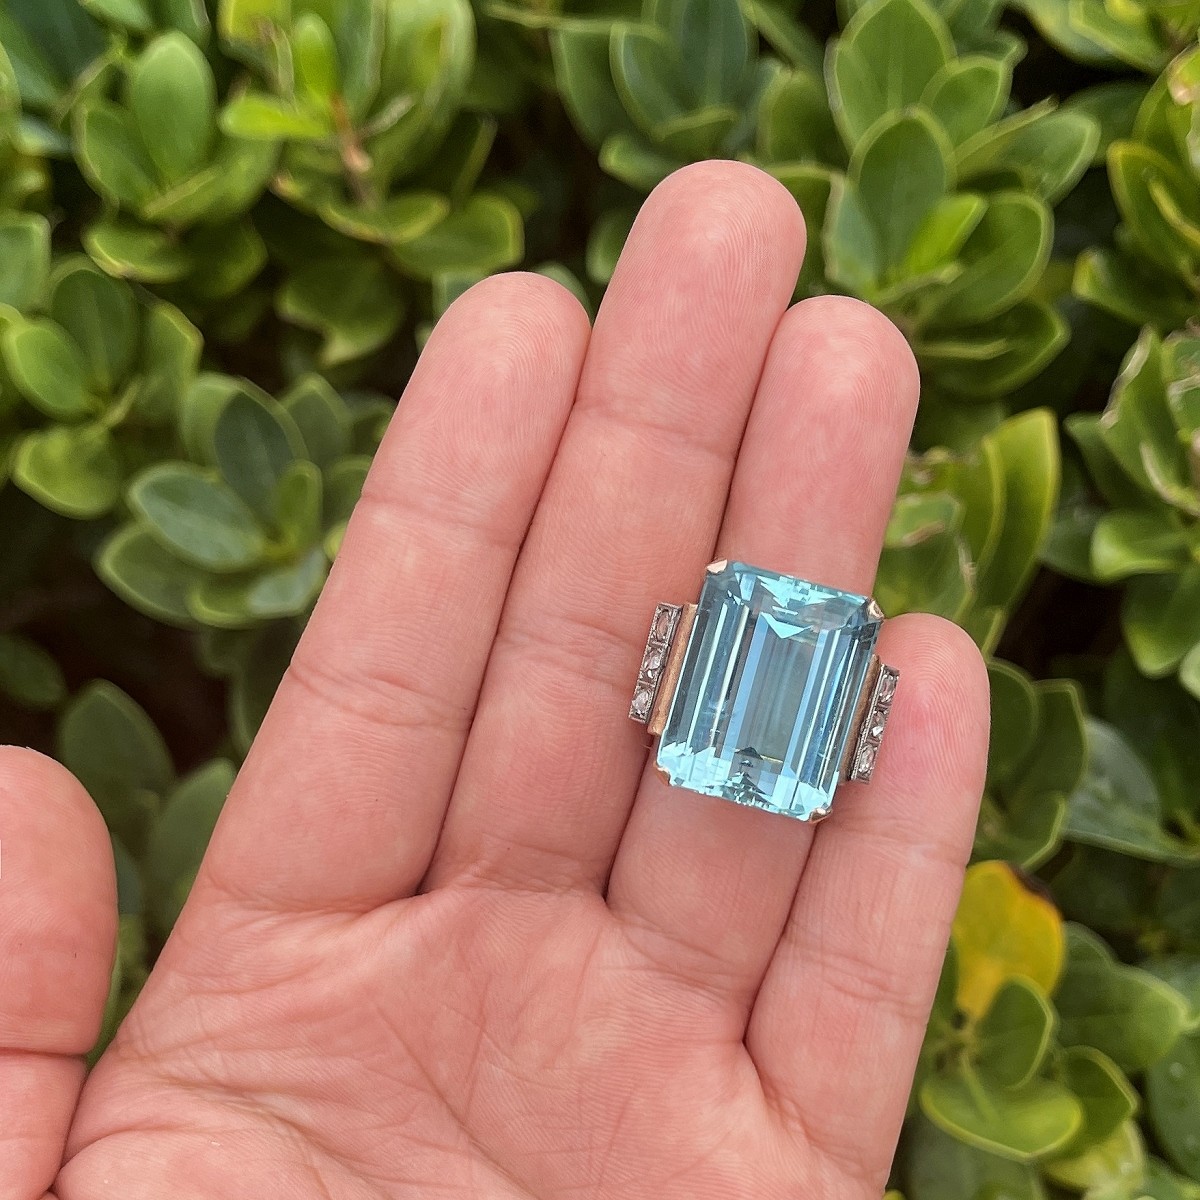 Aquamarine, Diamond and 14K Ring